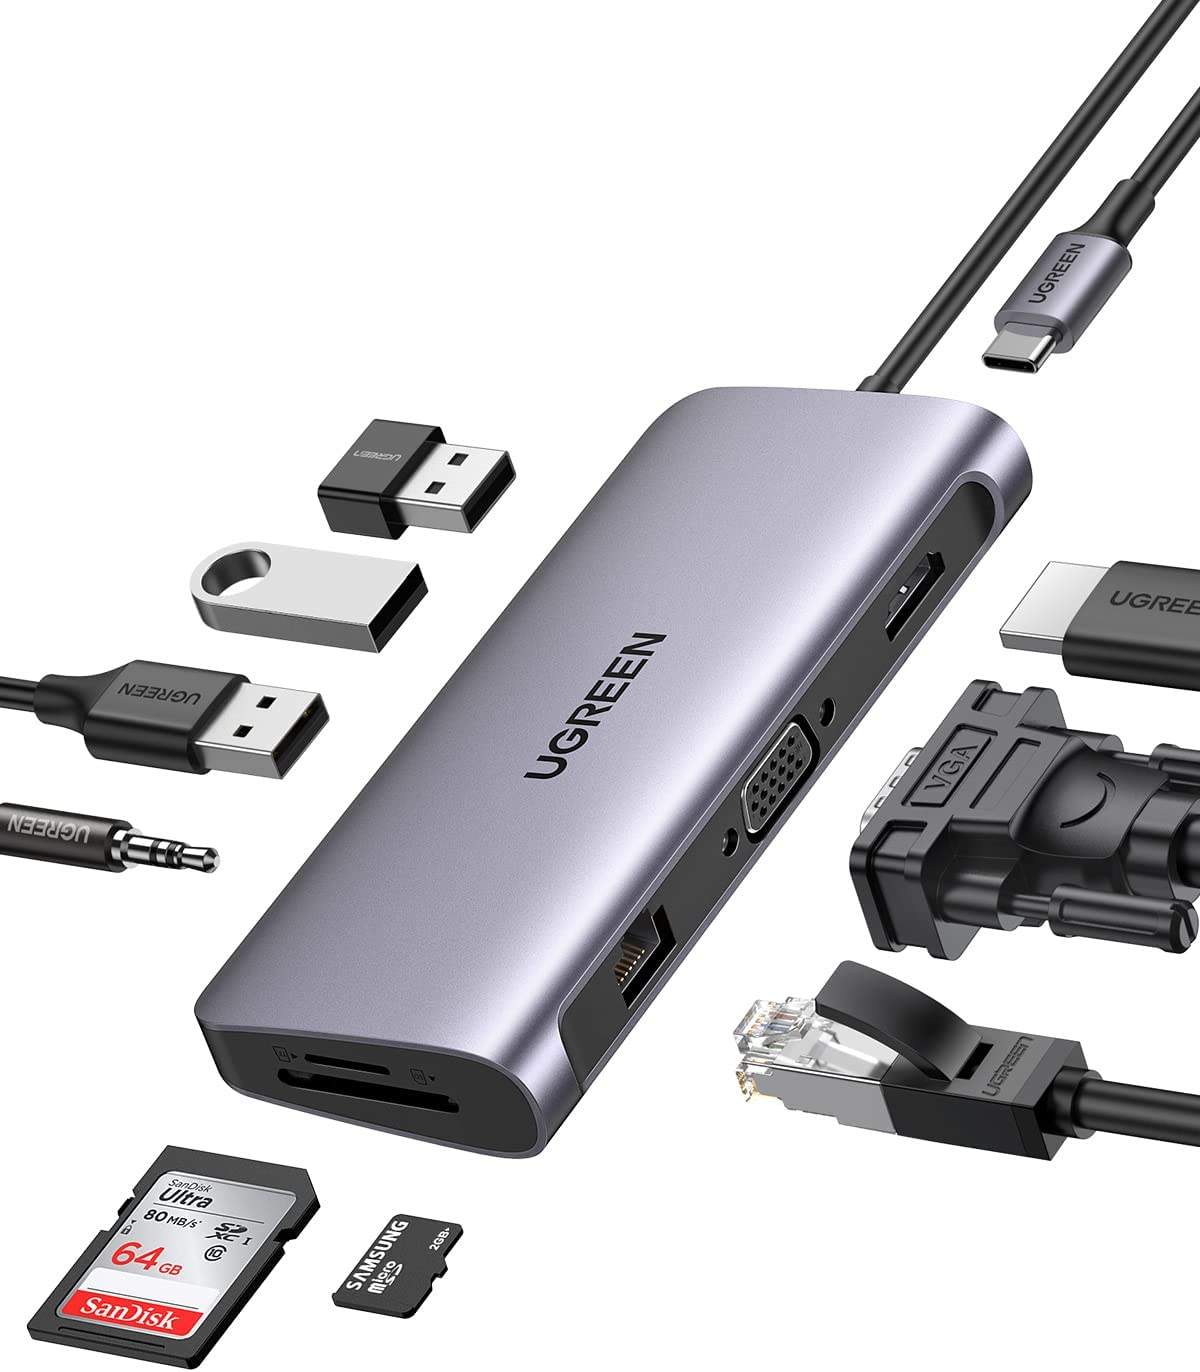 UGREEN Hub USB C, 10 en 1 USB C Hub Adaptador a HDMI 4K@30Hz, 1000Mbps Gigabit Ethernet, VGA, 3* USB 3.0, Lector Tarjeta SD TF, 3.5mm Audio Jack y 100W Power Delivery para Macbook Pro/Air, iPad Pro